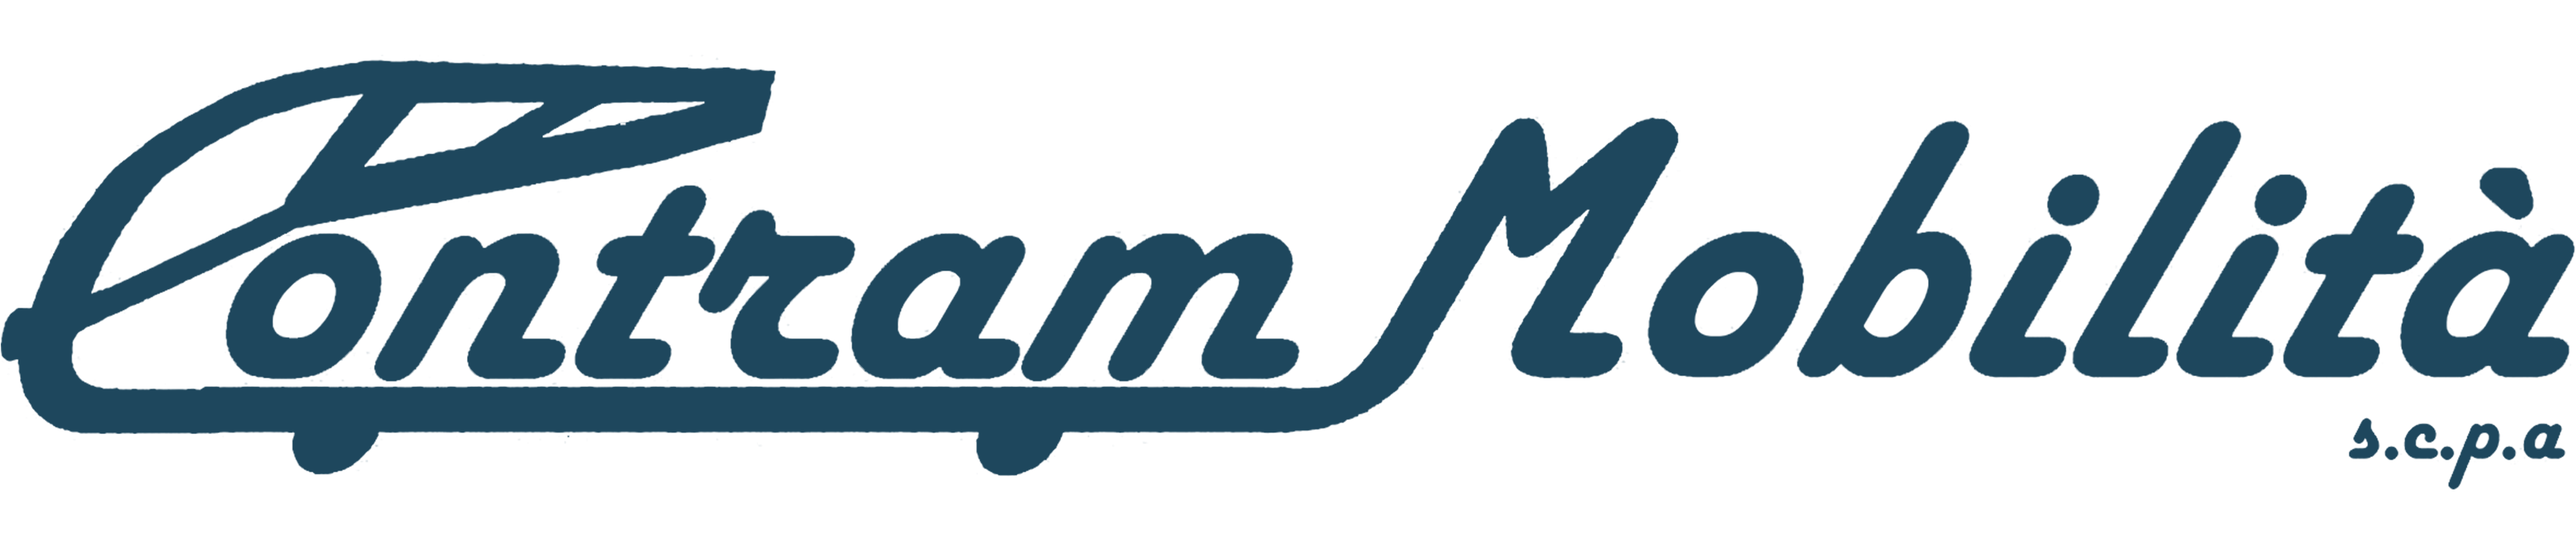 Animazione digitale -Logo_Contram_Mobilita